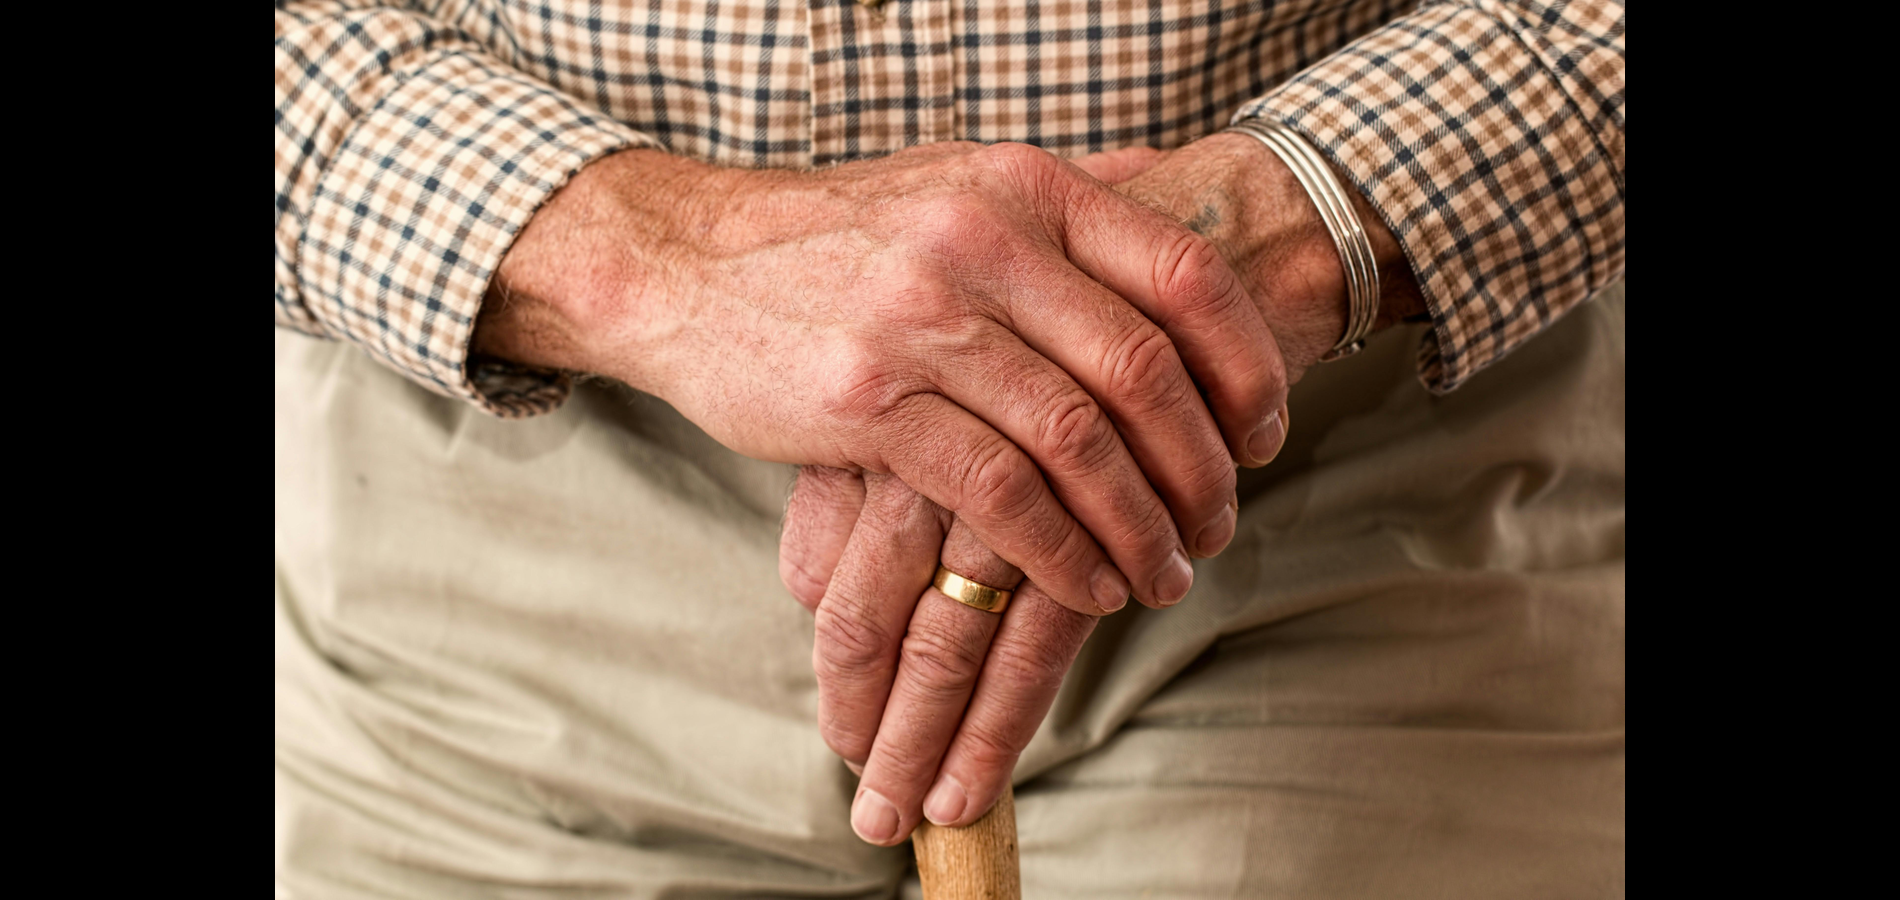 La soledad en las personas mayores: Corte reconoce los retos del envejecimiento (Colombia)